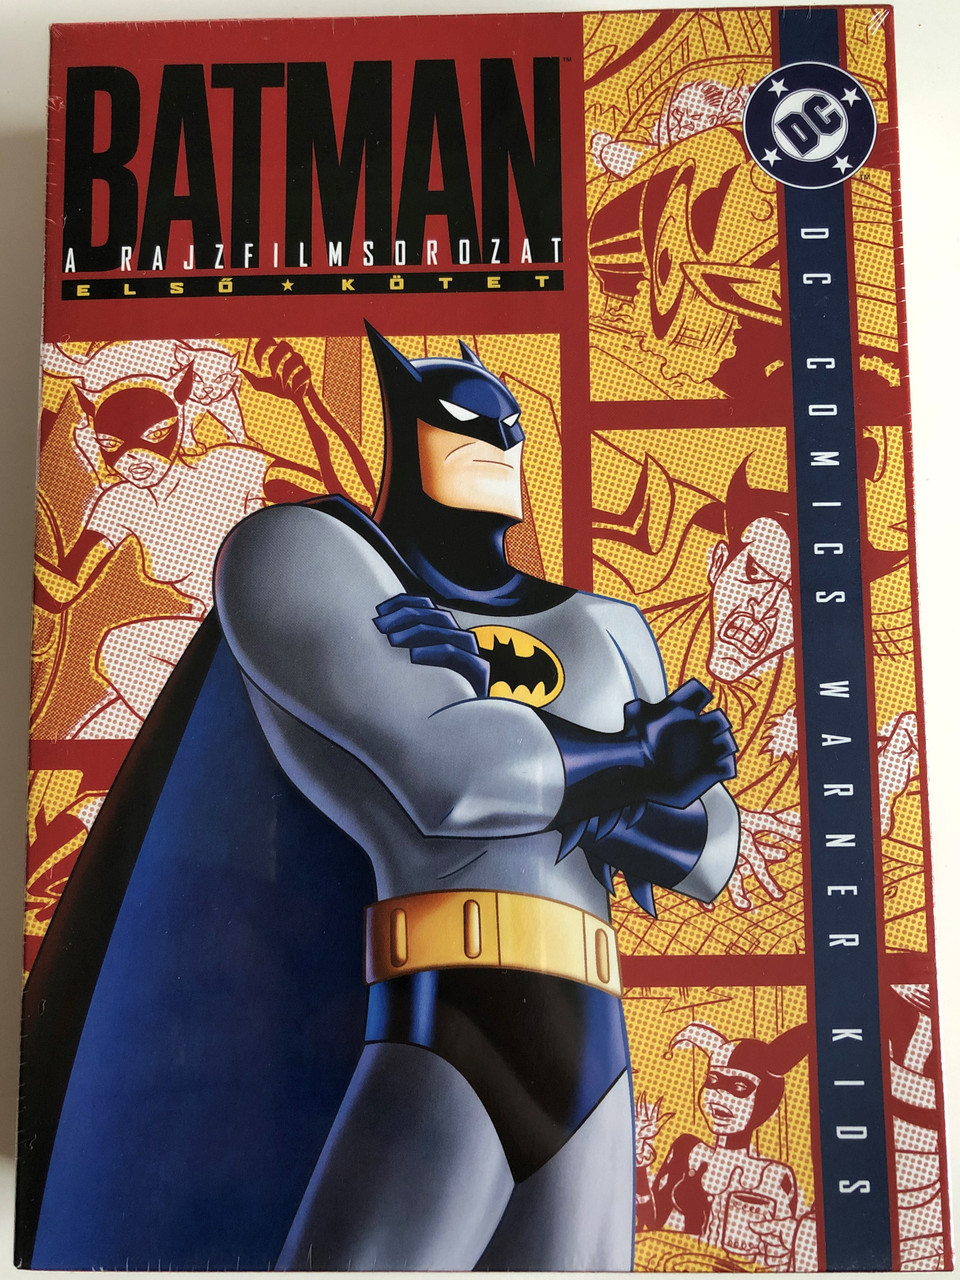 Batman Animated Series Vol 1. Season 1 DVD SET 2006 Batman a  rajzfilmsorozat 1. kötet - 4